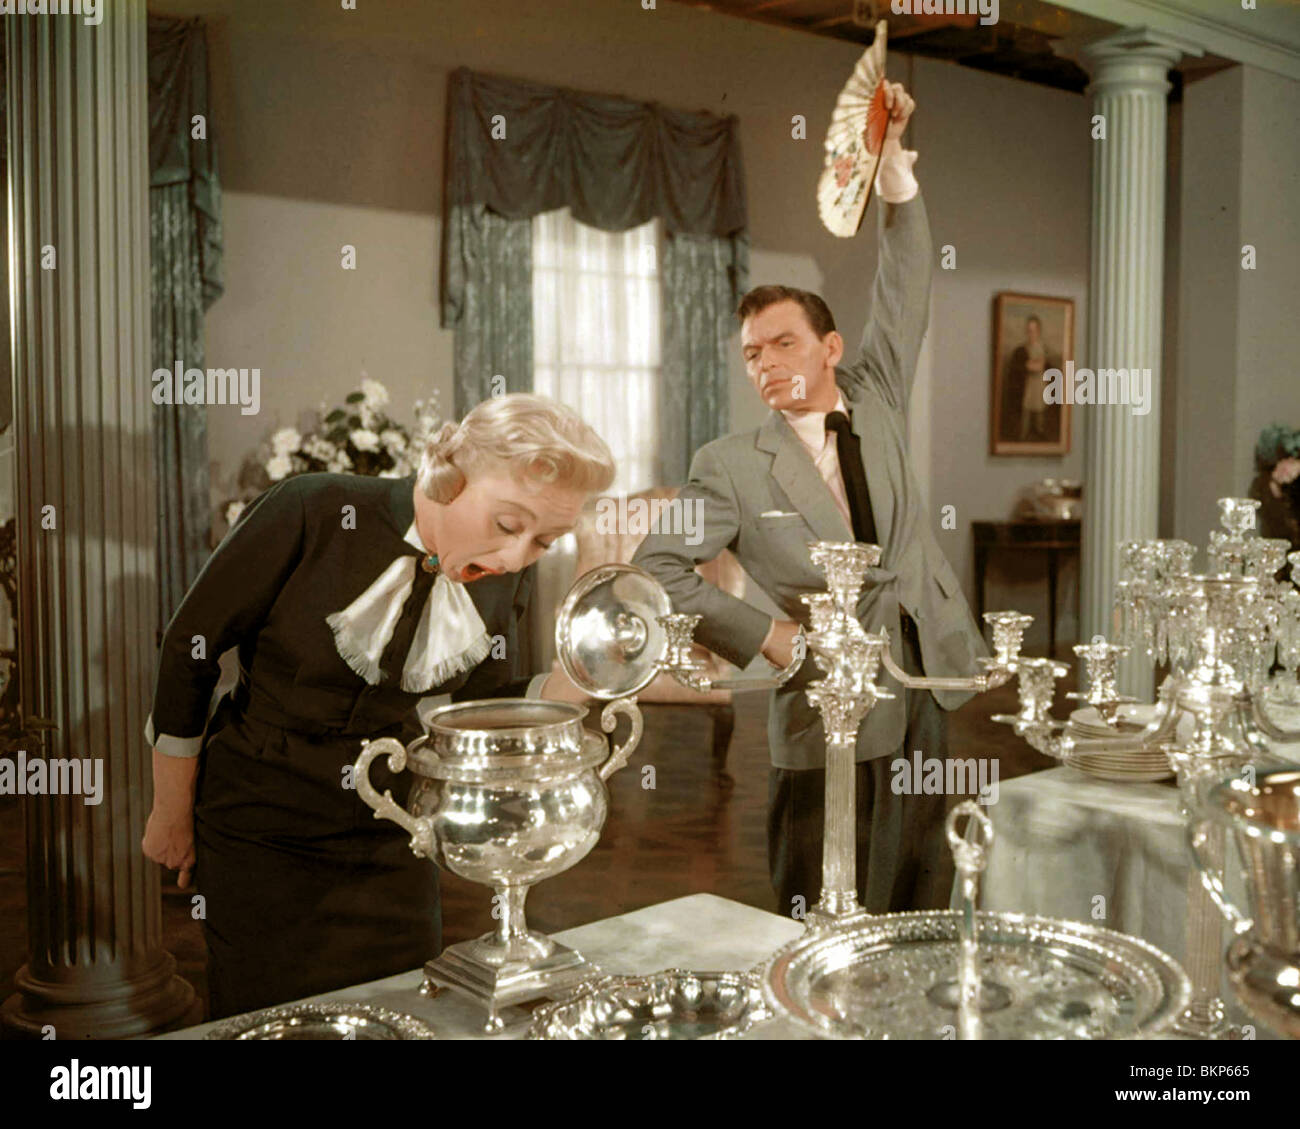 HIGH SOCIETY (1956) GRACE KELLY, FRANK SINATRA CHARLES WALTERS (DIR) HGSY 024 Stock Photo